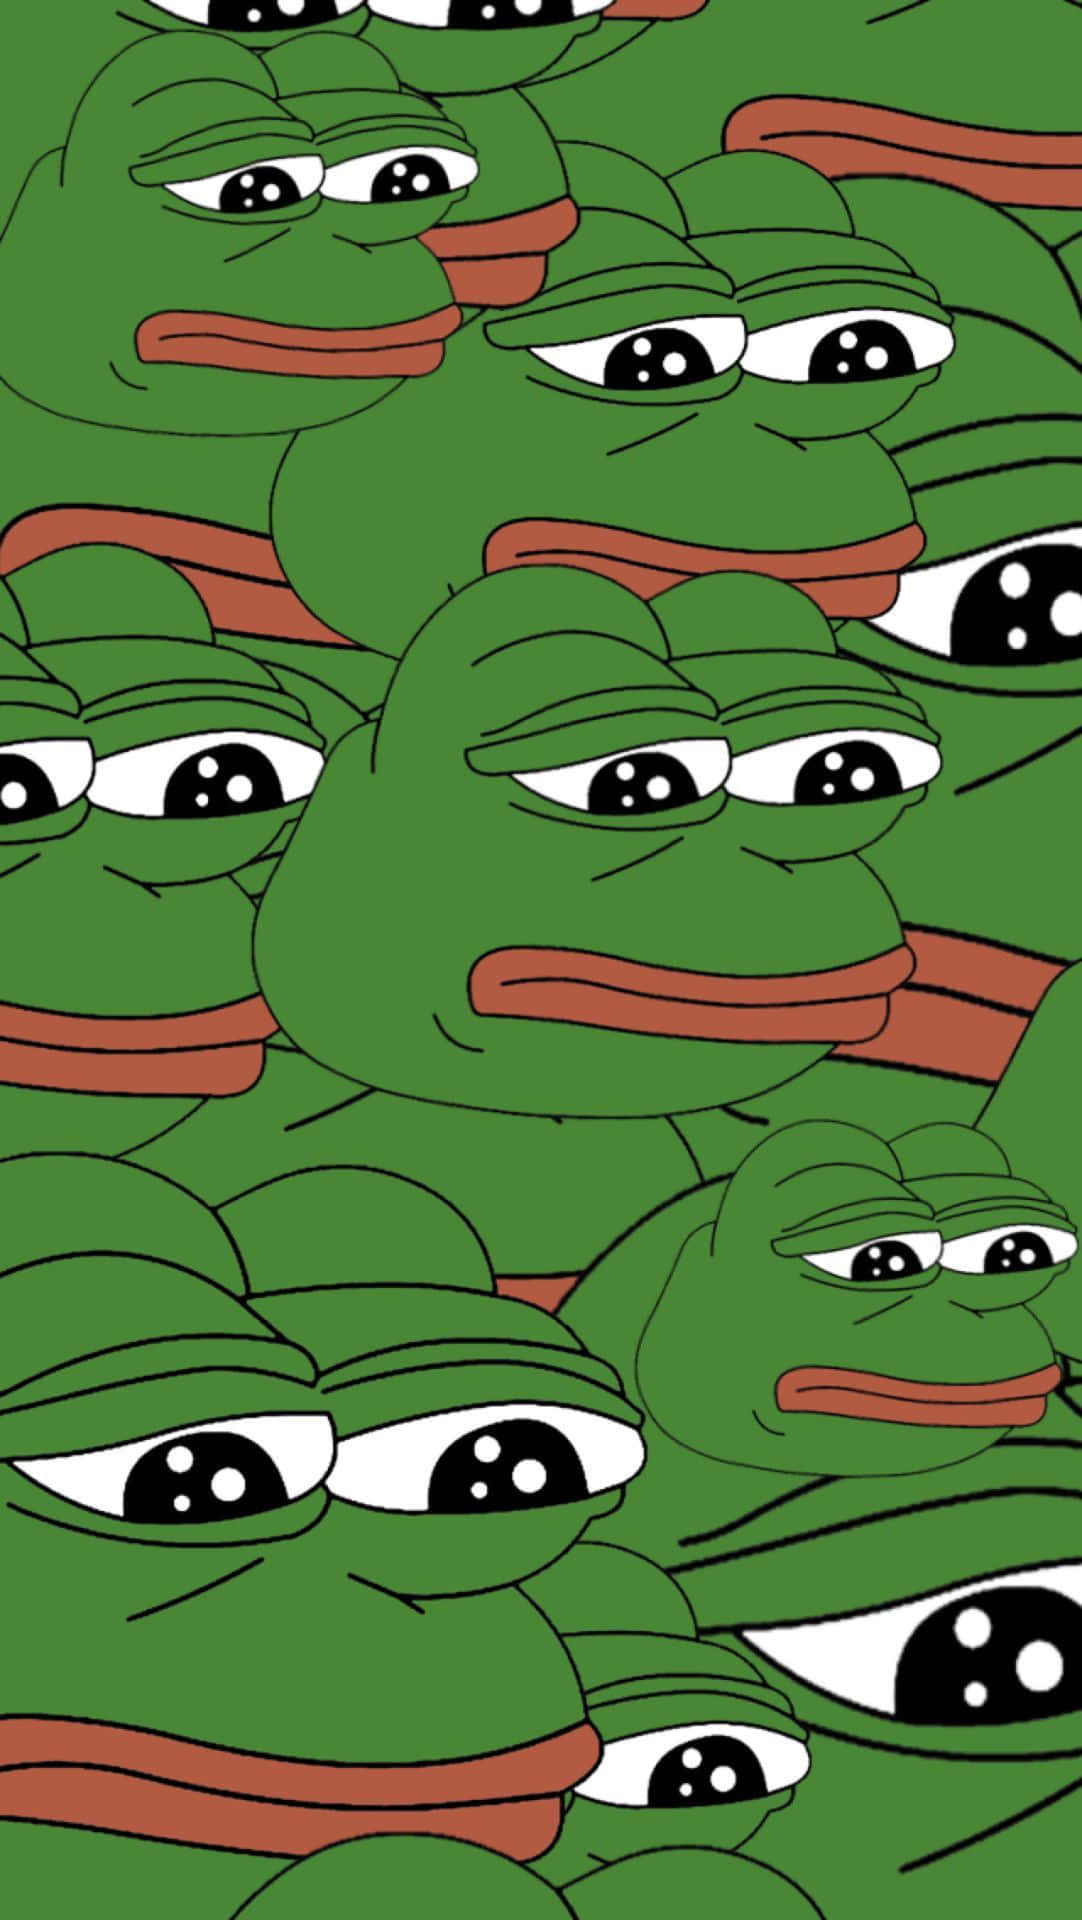 Pepe,o Sapo Memético, É Uma Imagem Engraçada Popularizada Na Internet. É Comumente Usada Como Papel De Parede Em Computadores E Celulares.